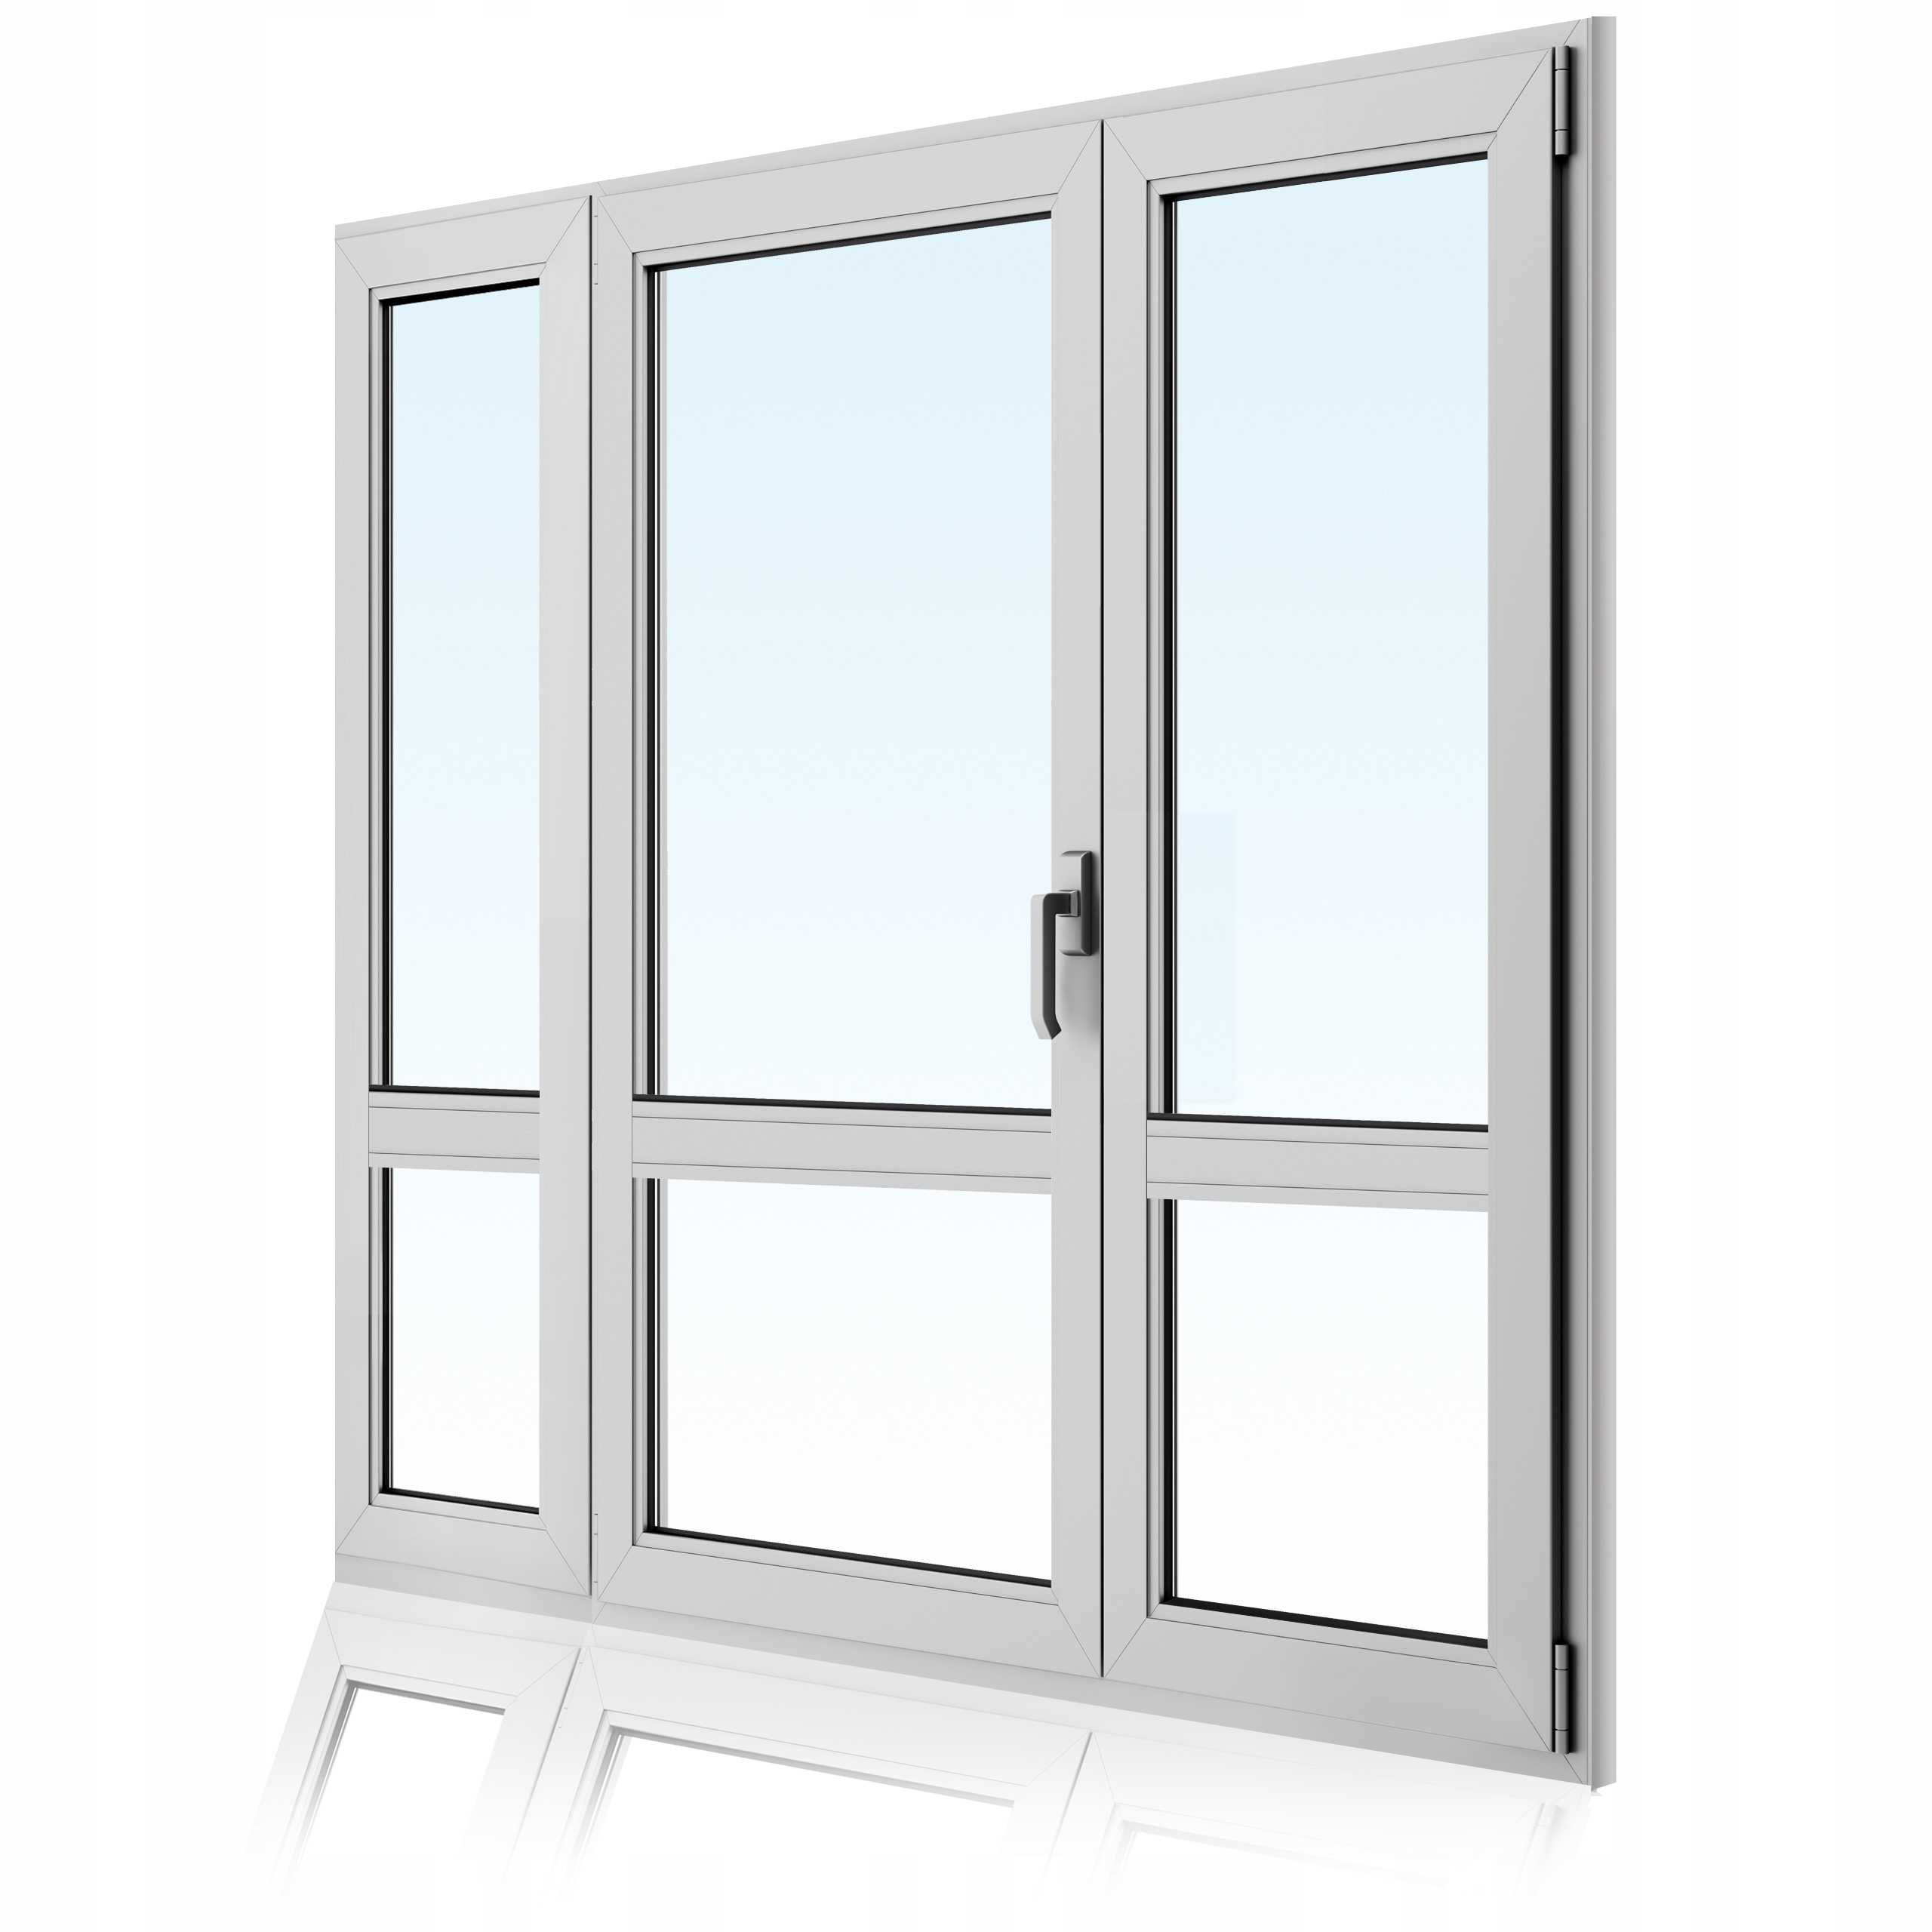 Пластиковые двери в нижнем новгороде. Окна двери PVC 2.77 Windows. Акфа пластиковые окна (3 стекло). Пластиковые двери. Балконная дверь ПВХ.